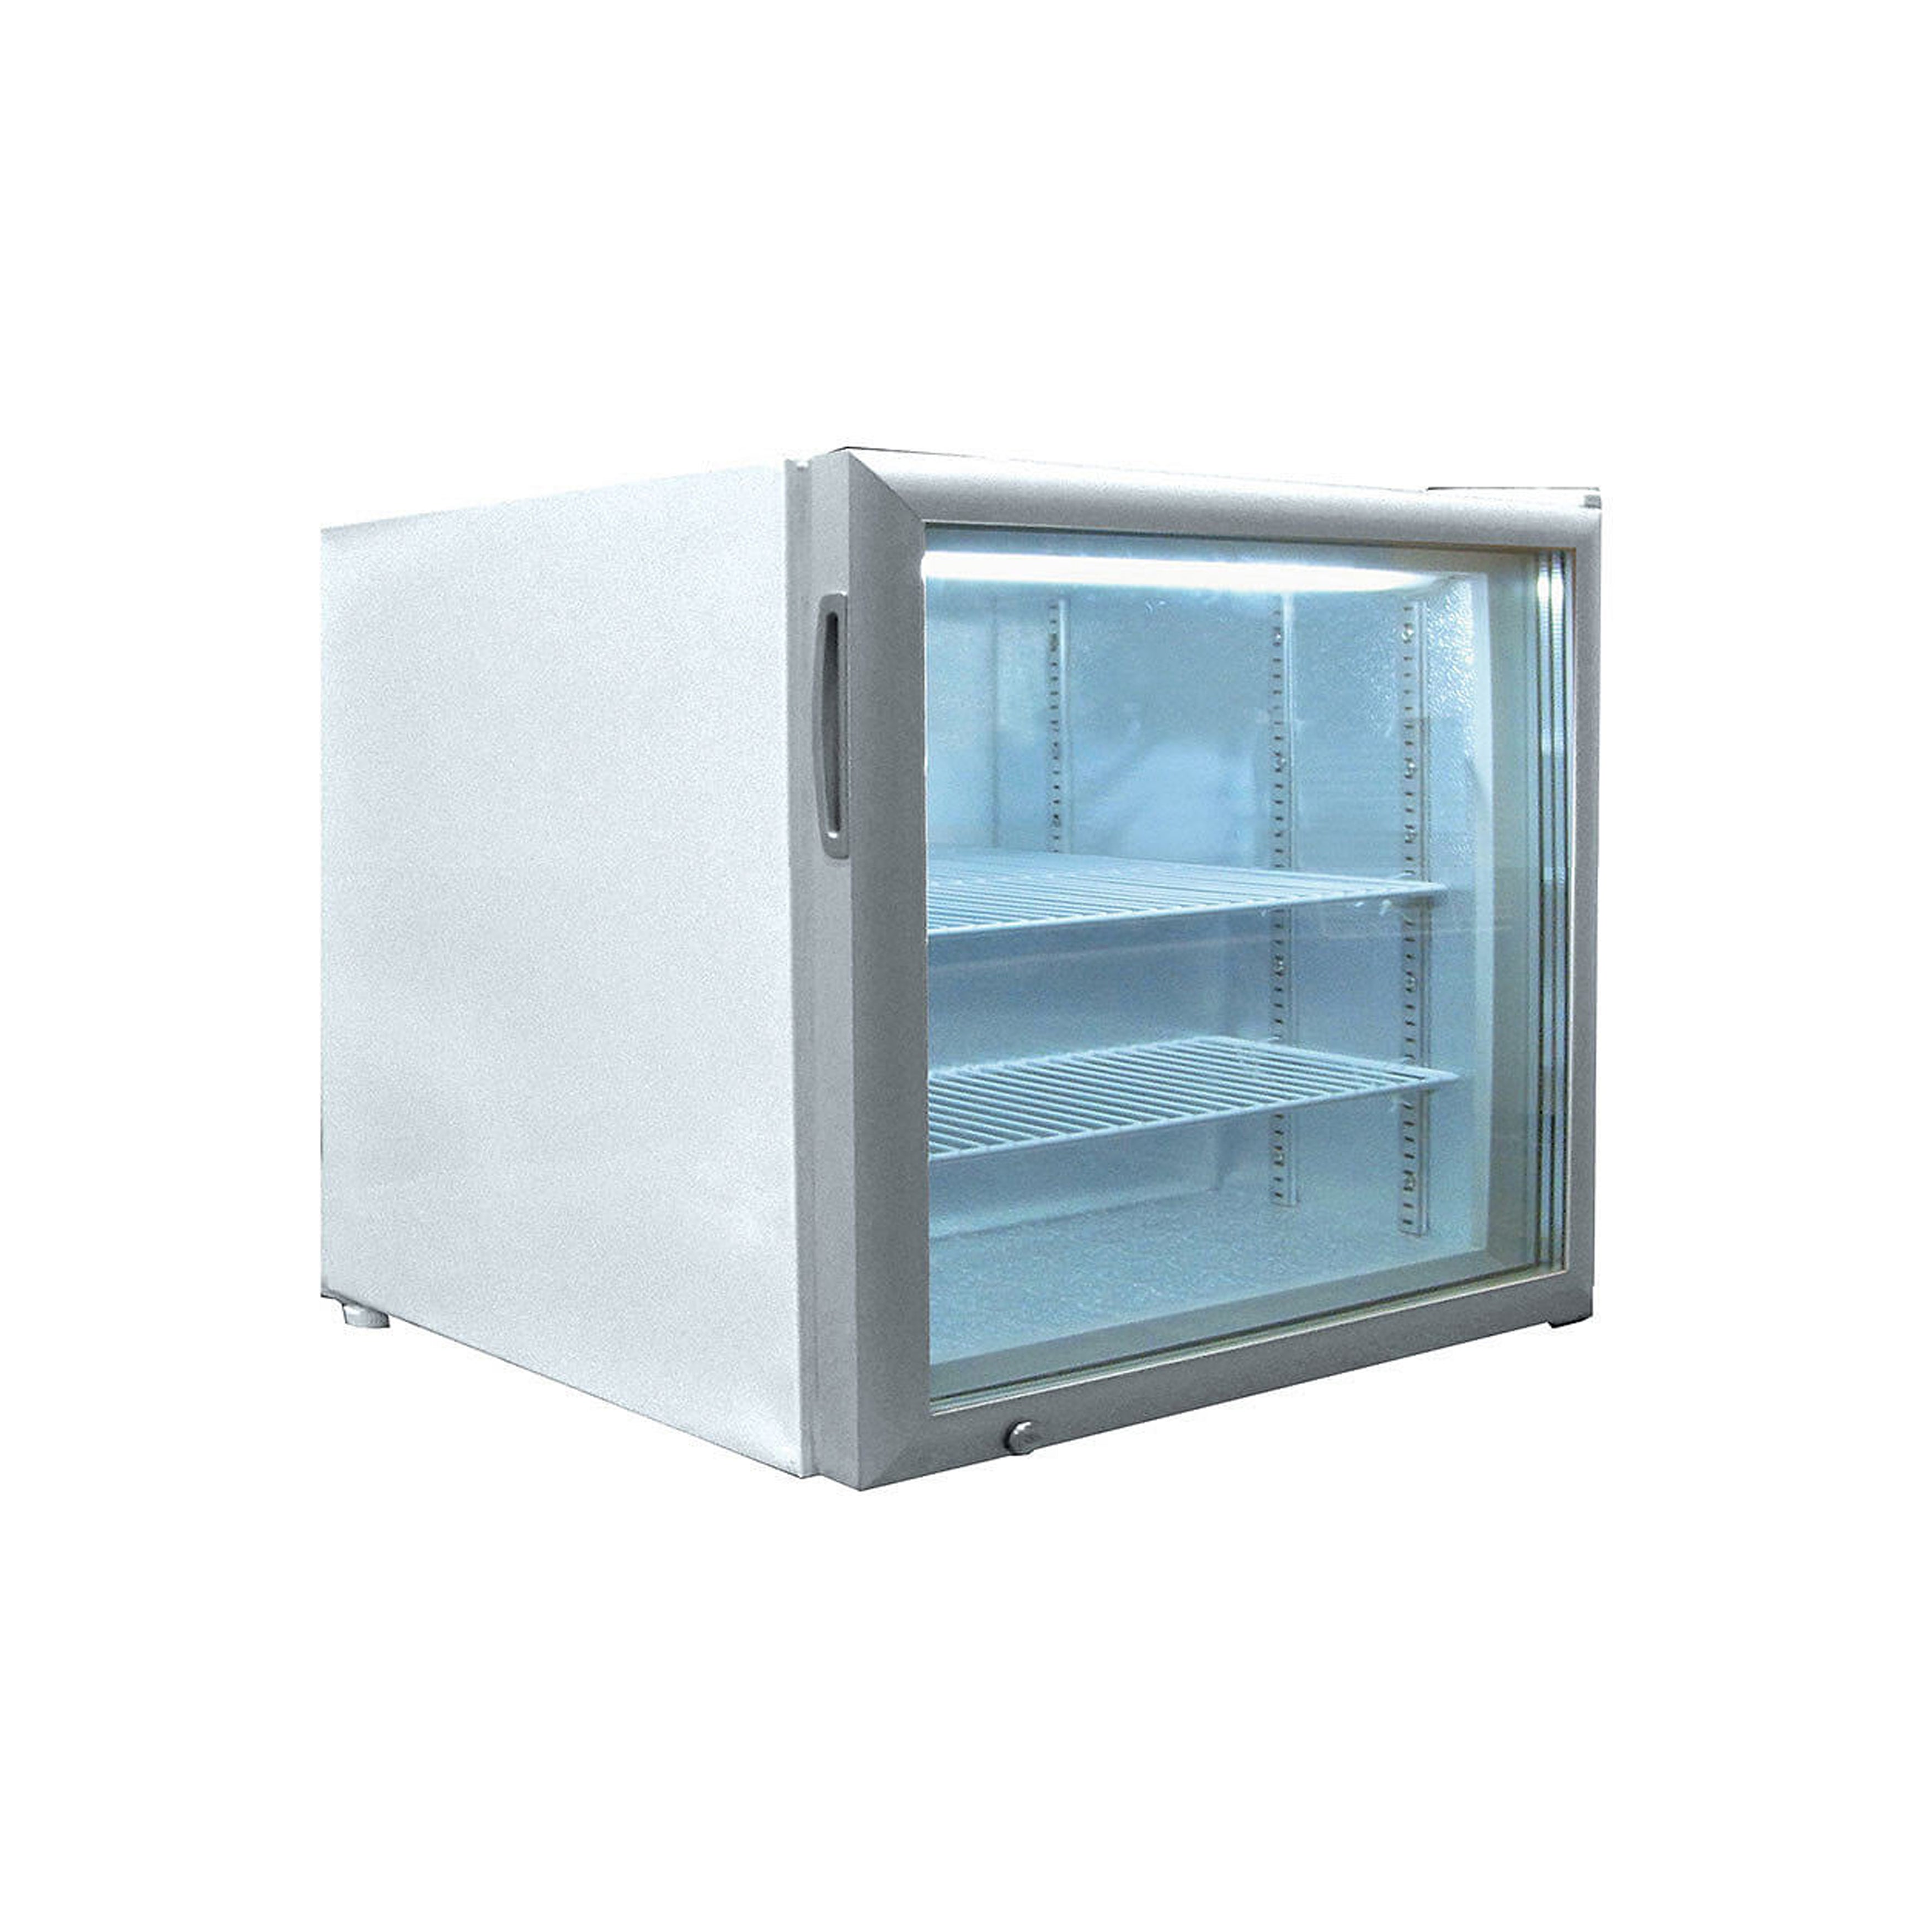 Excellence Industries - CTF-2HC, 22" Commercial Countertop Glass Door Merchandiser Freezer 1.9 cu.ft.